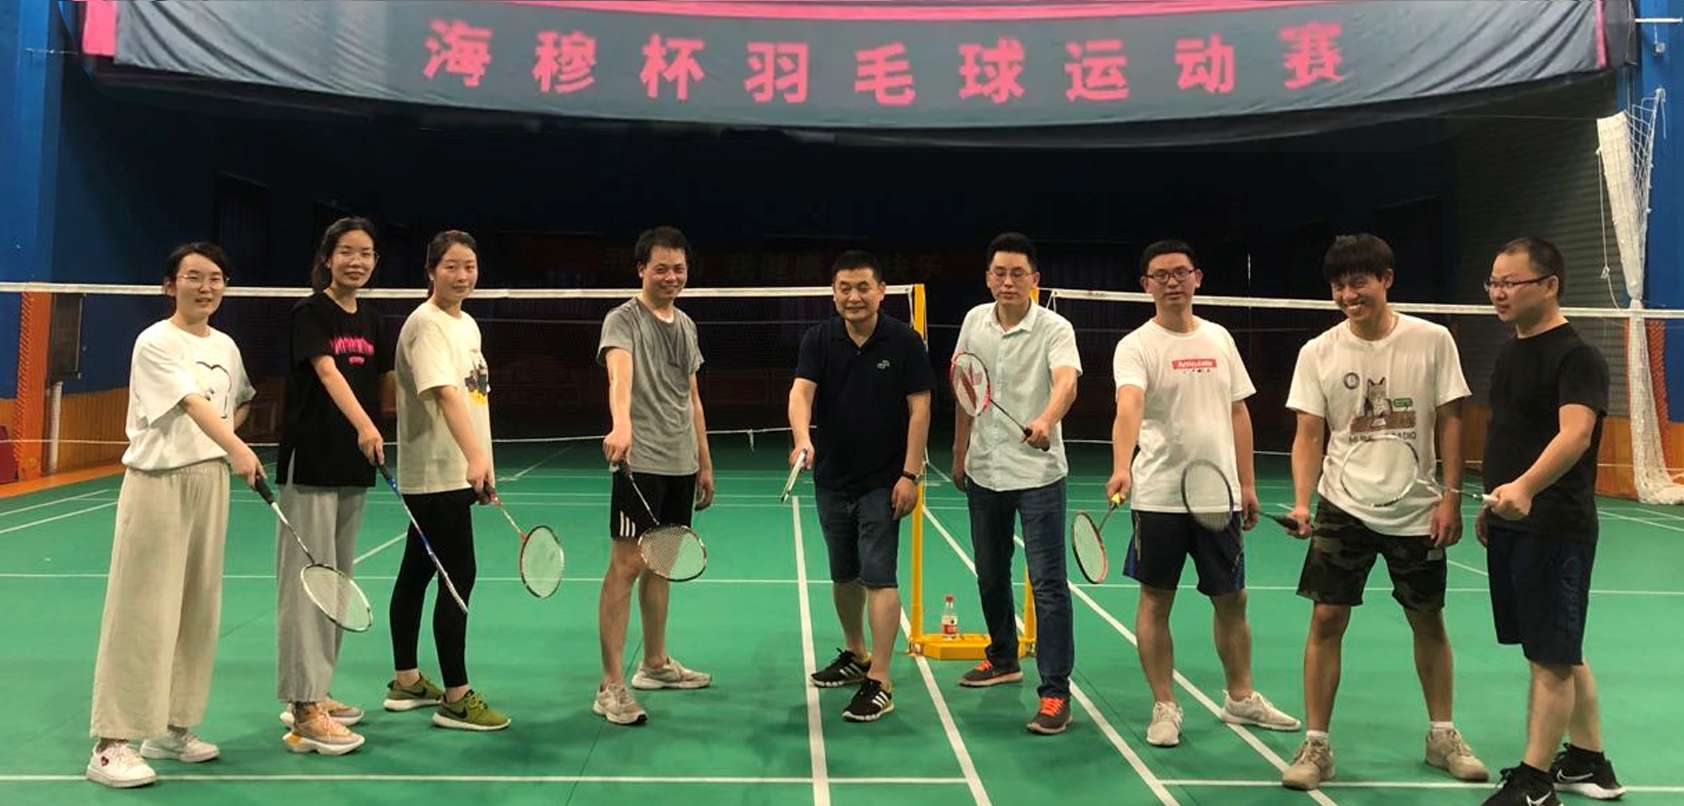 sports meet 丨- Haimooo Summer badminton war